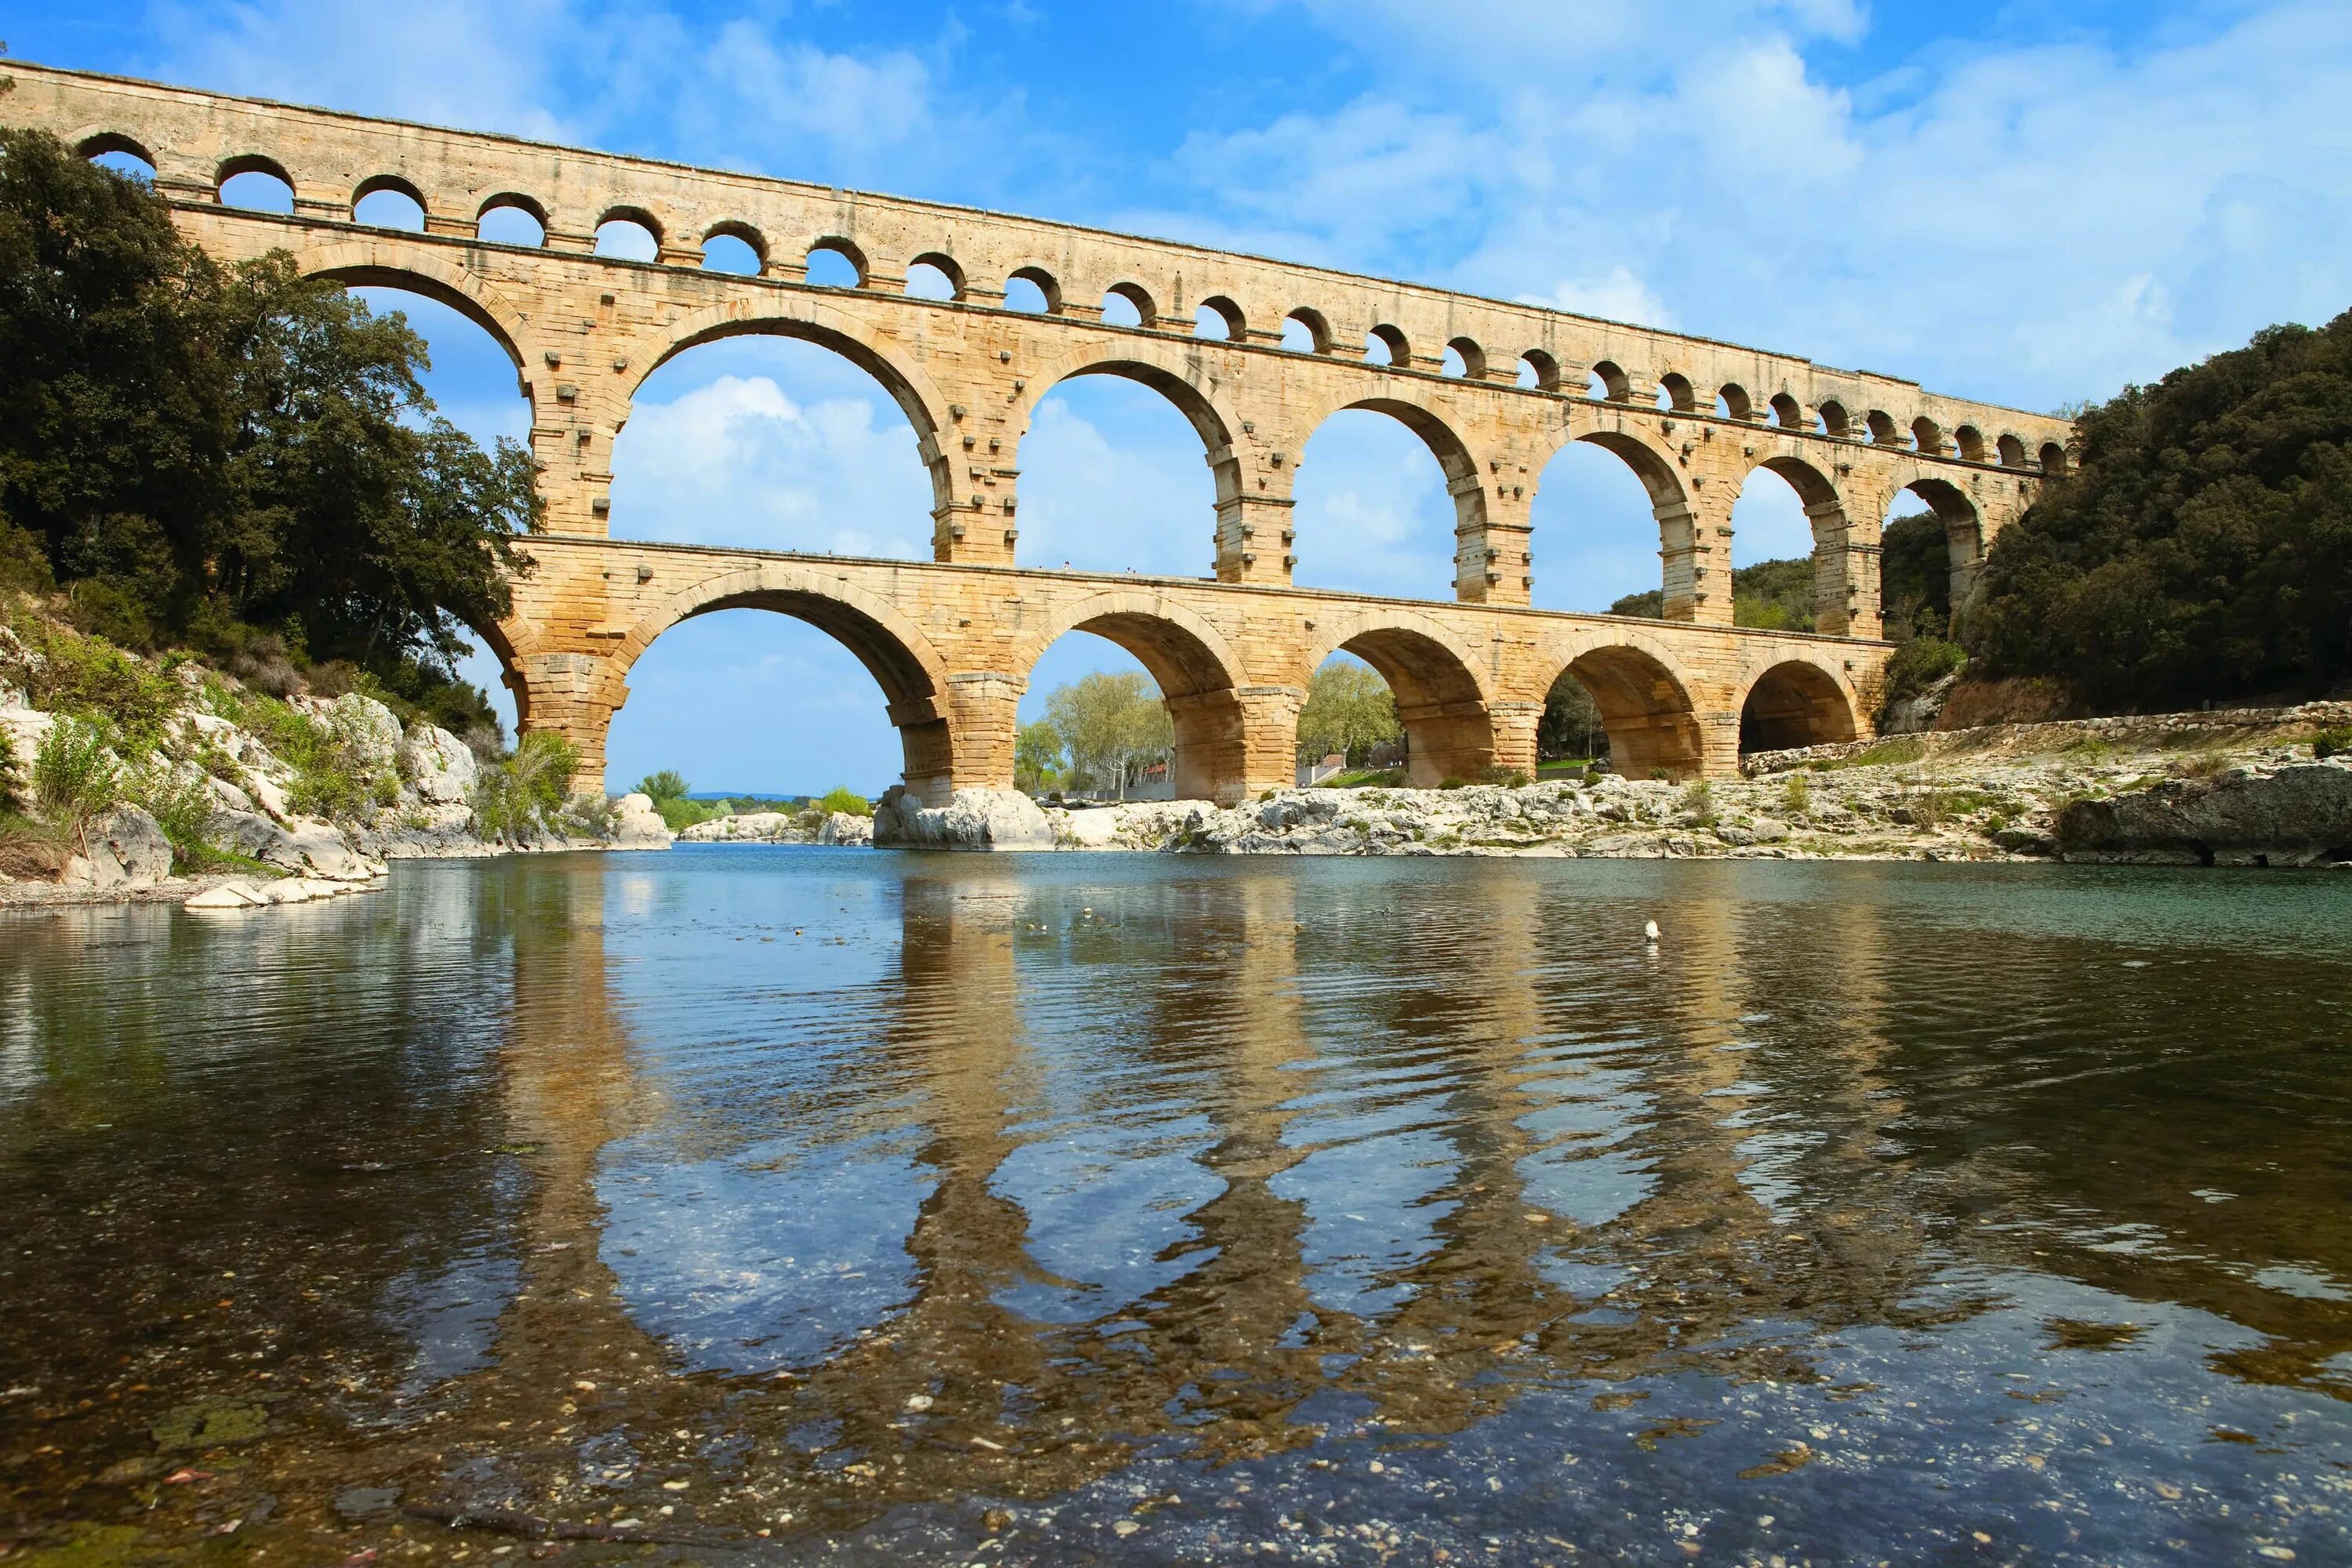 Пон вид. Пон-дю-гар Франция. Пон-дю-гар во Франции. Римский акведук. Акведук Пон дю-гар на юге Франции. Акведуки древнего Рима Пон дю гар.